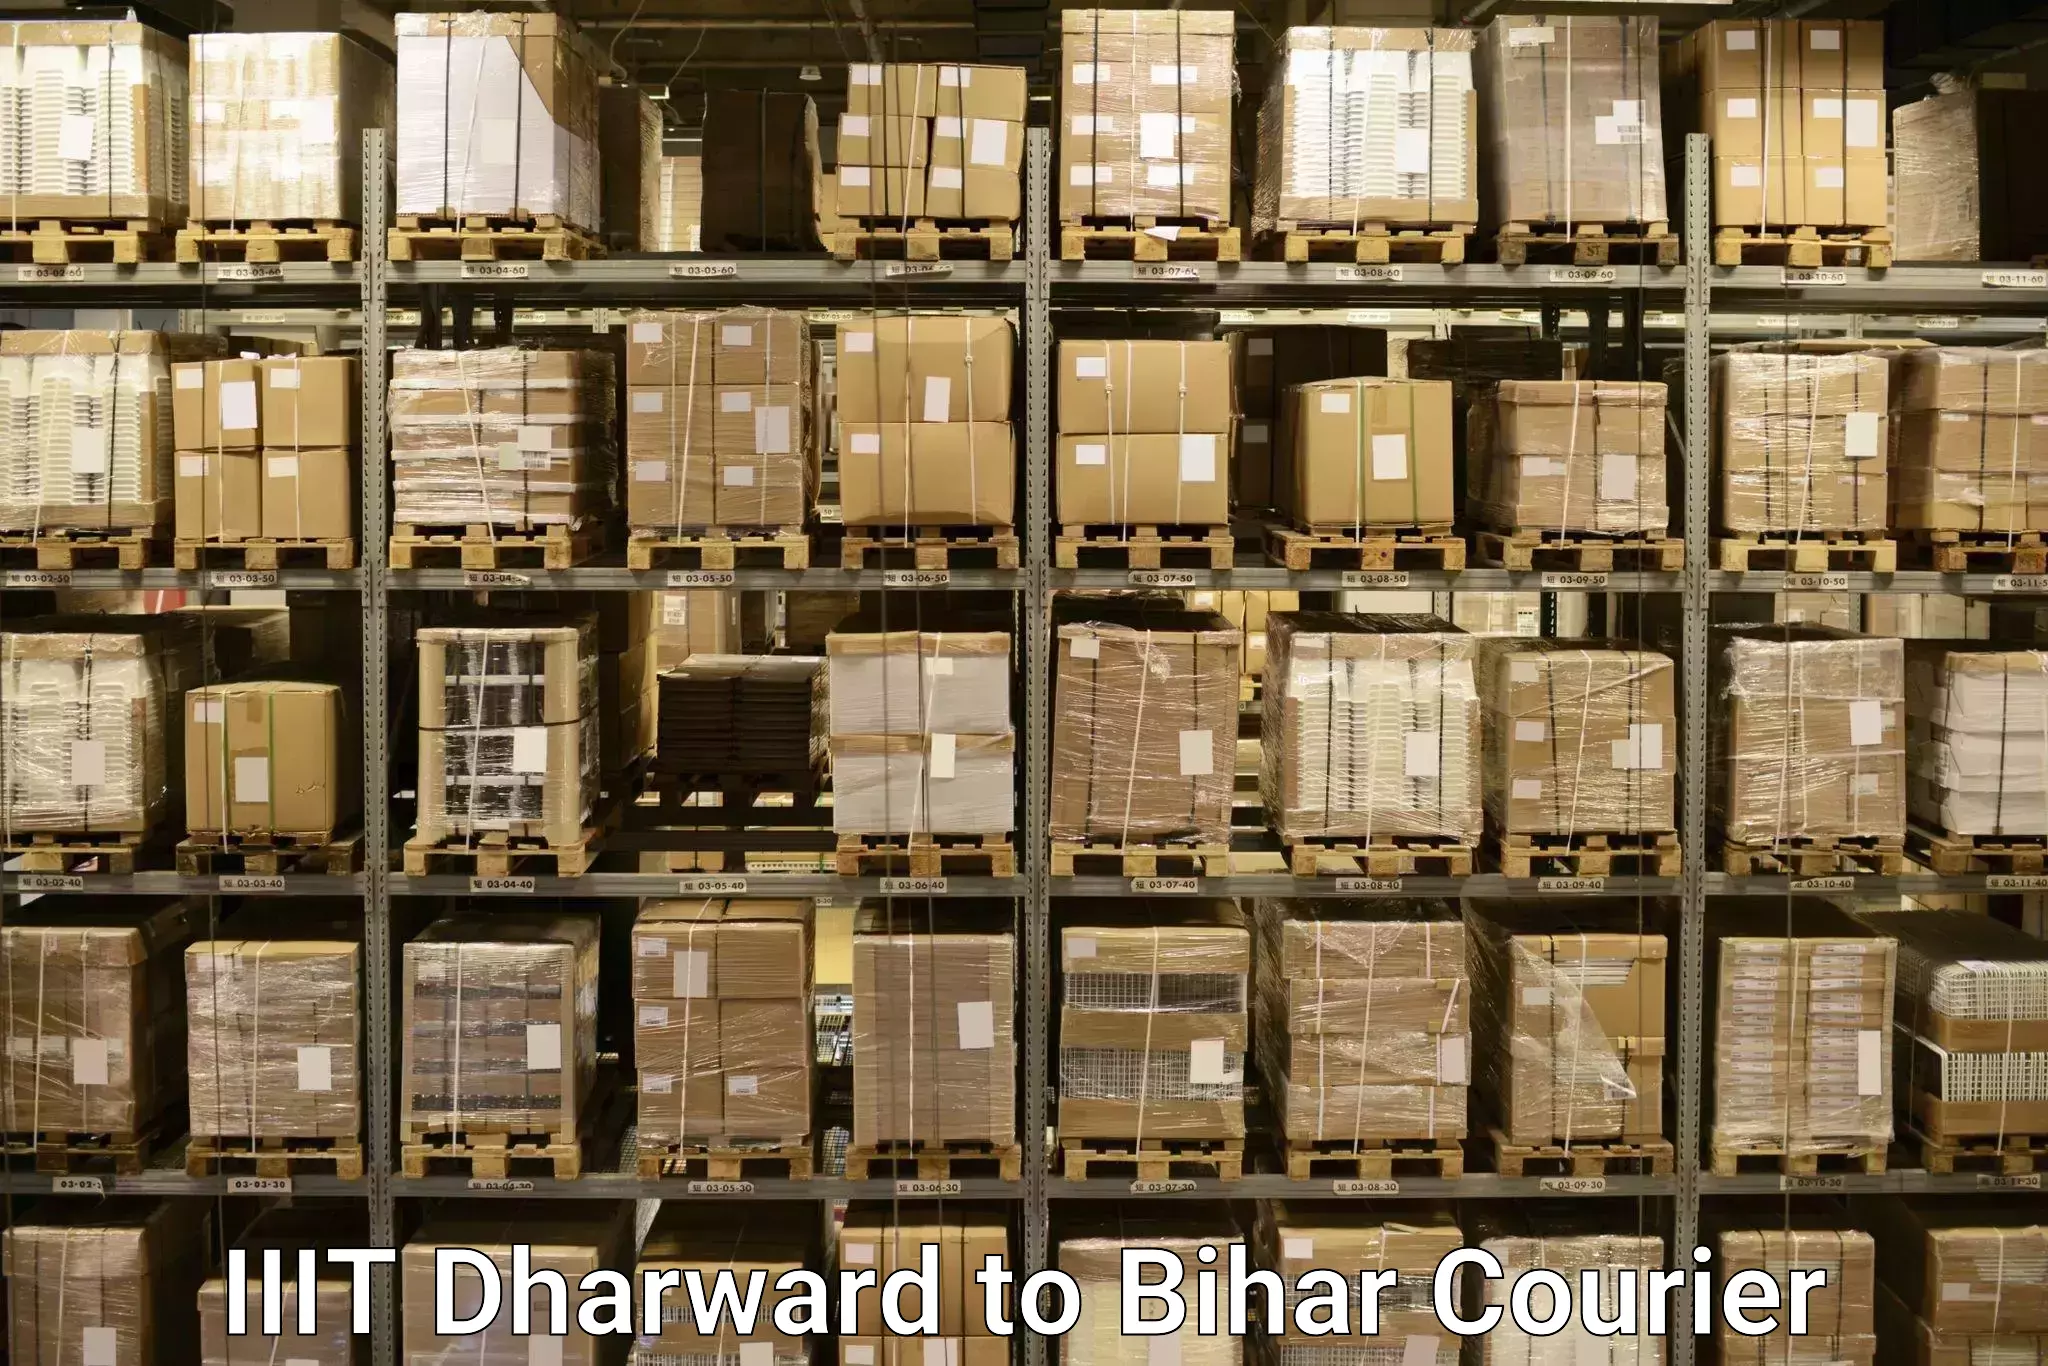 Luggage forwarding service IIIT Dharward to Bihta